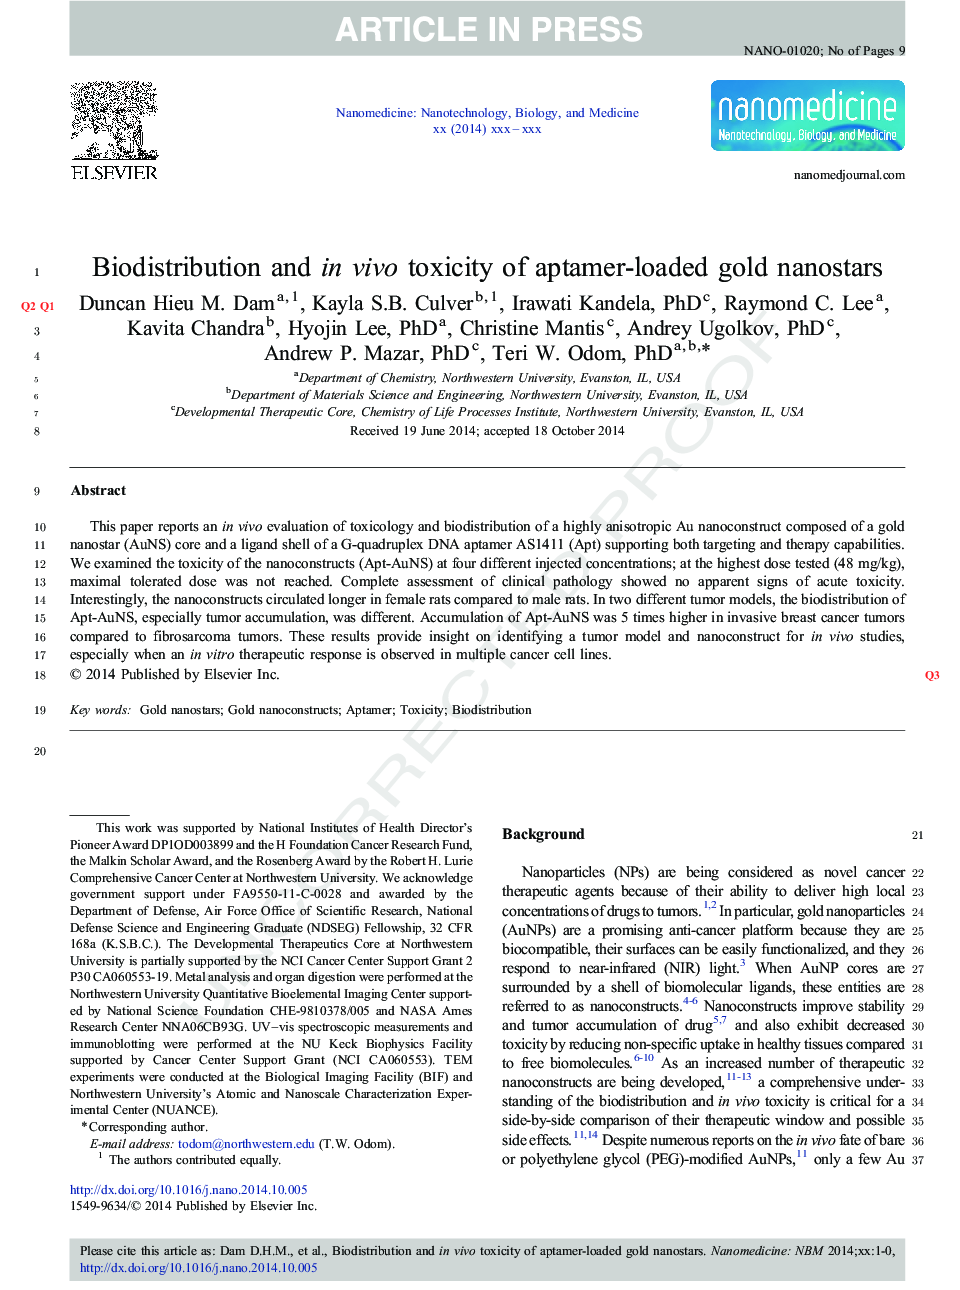 توزیع بیولوژیکی و مسمومیت درون بدن از نانوسارهای طلای طلایی آپتامر 